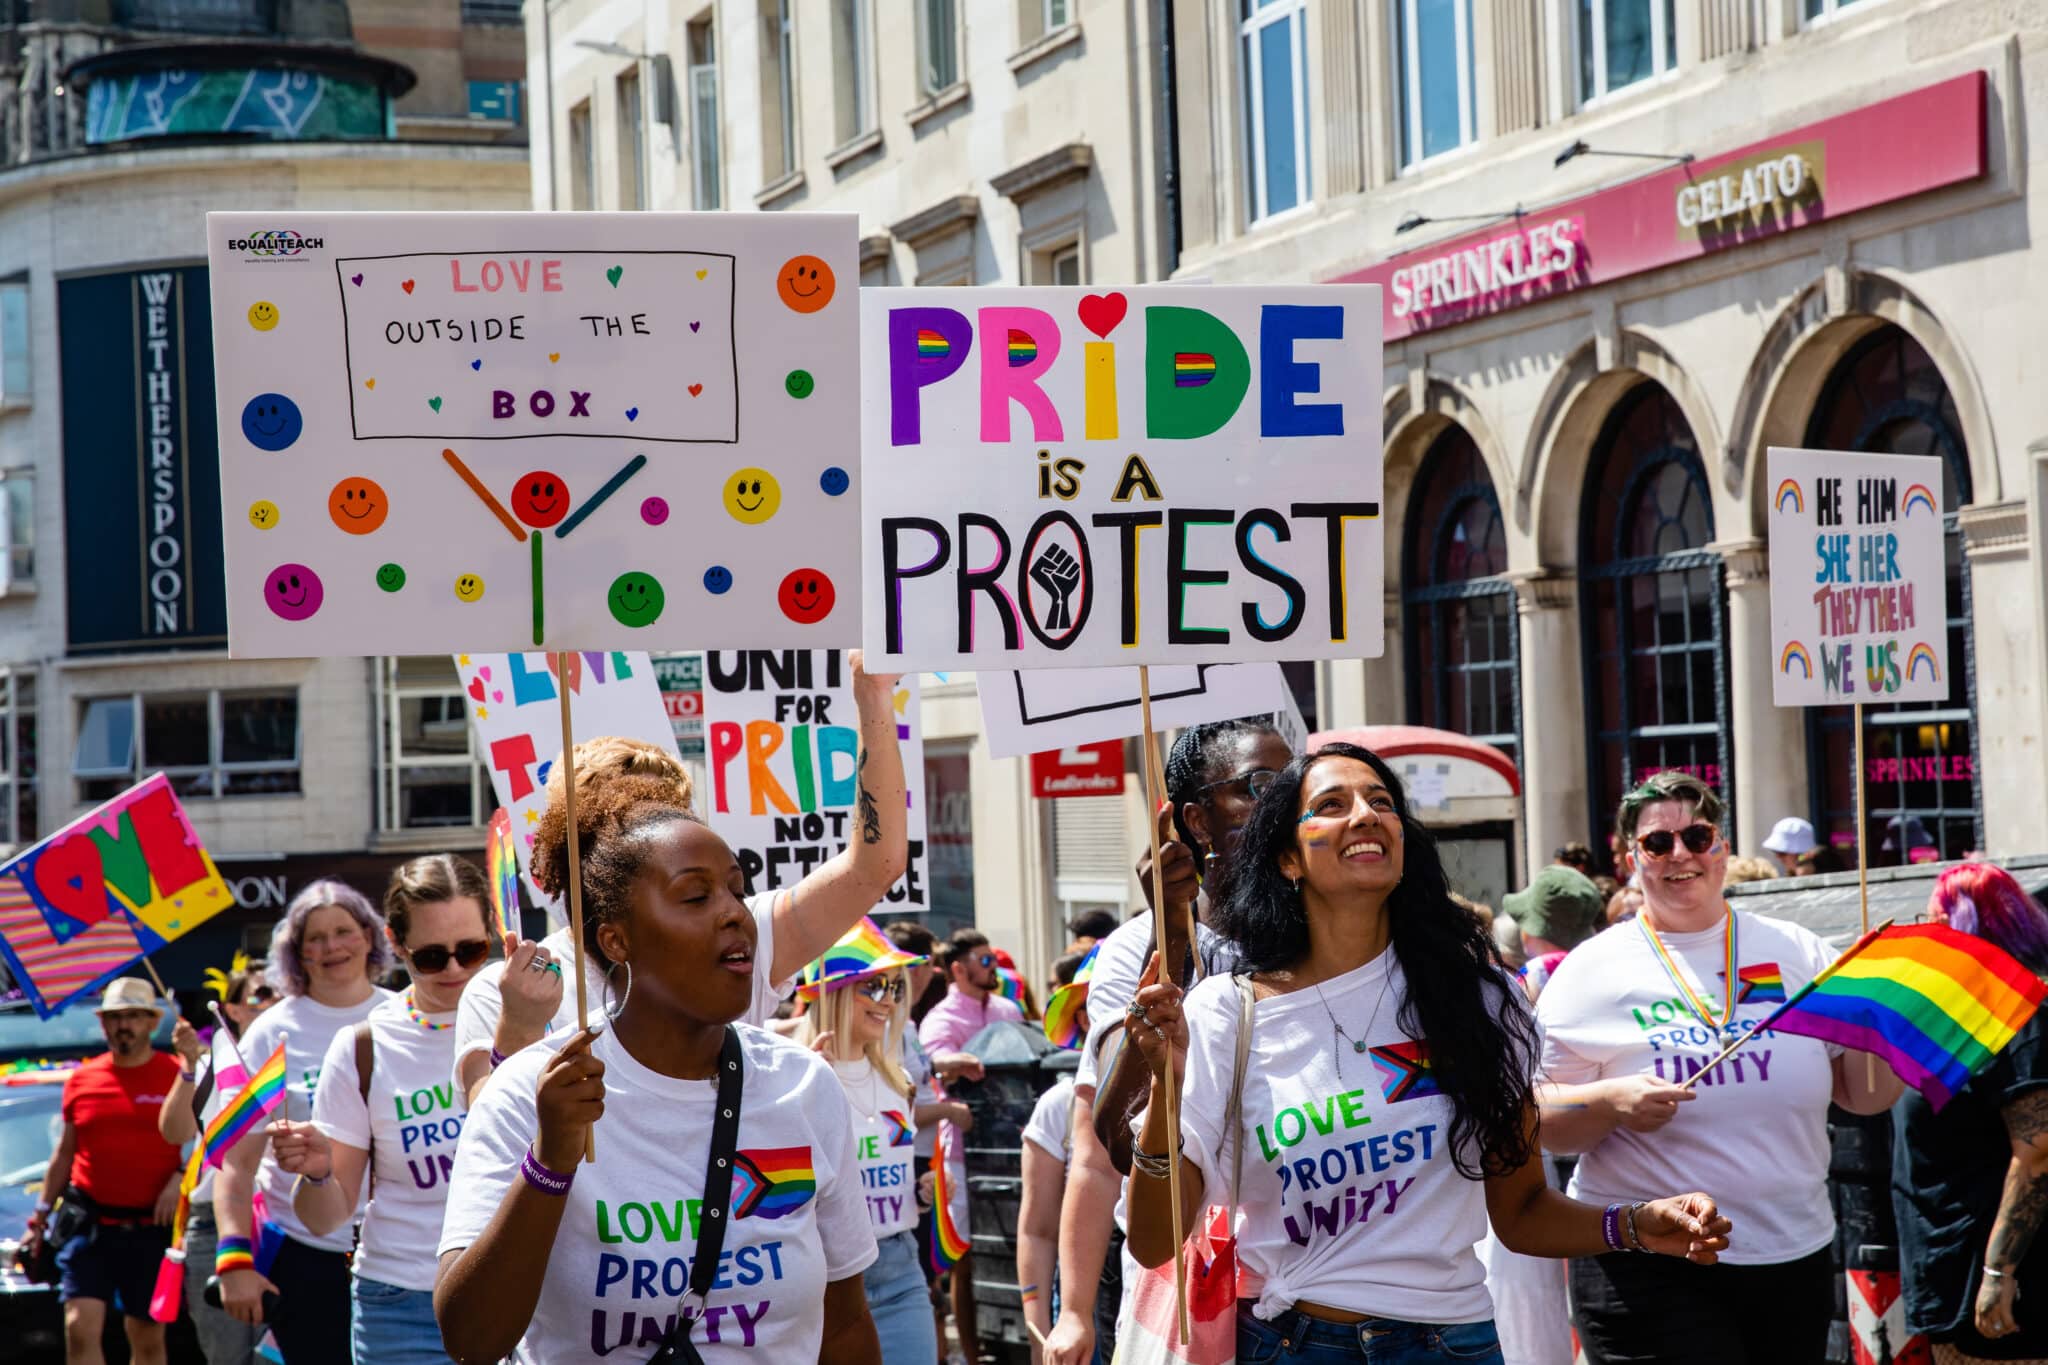 La ciudad de Brighton es la más segura para el colectivo LGTB+ según un estudio